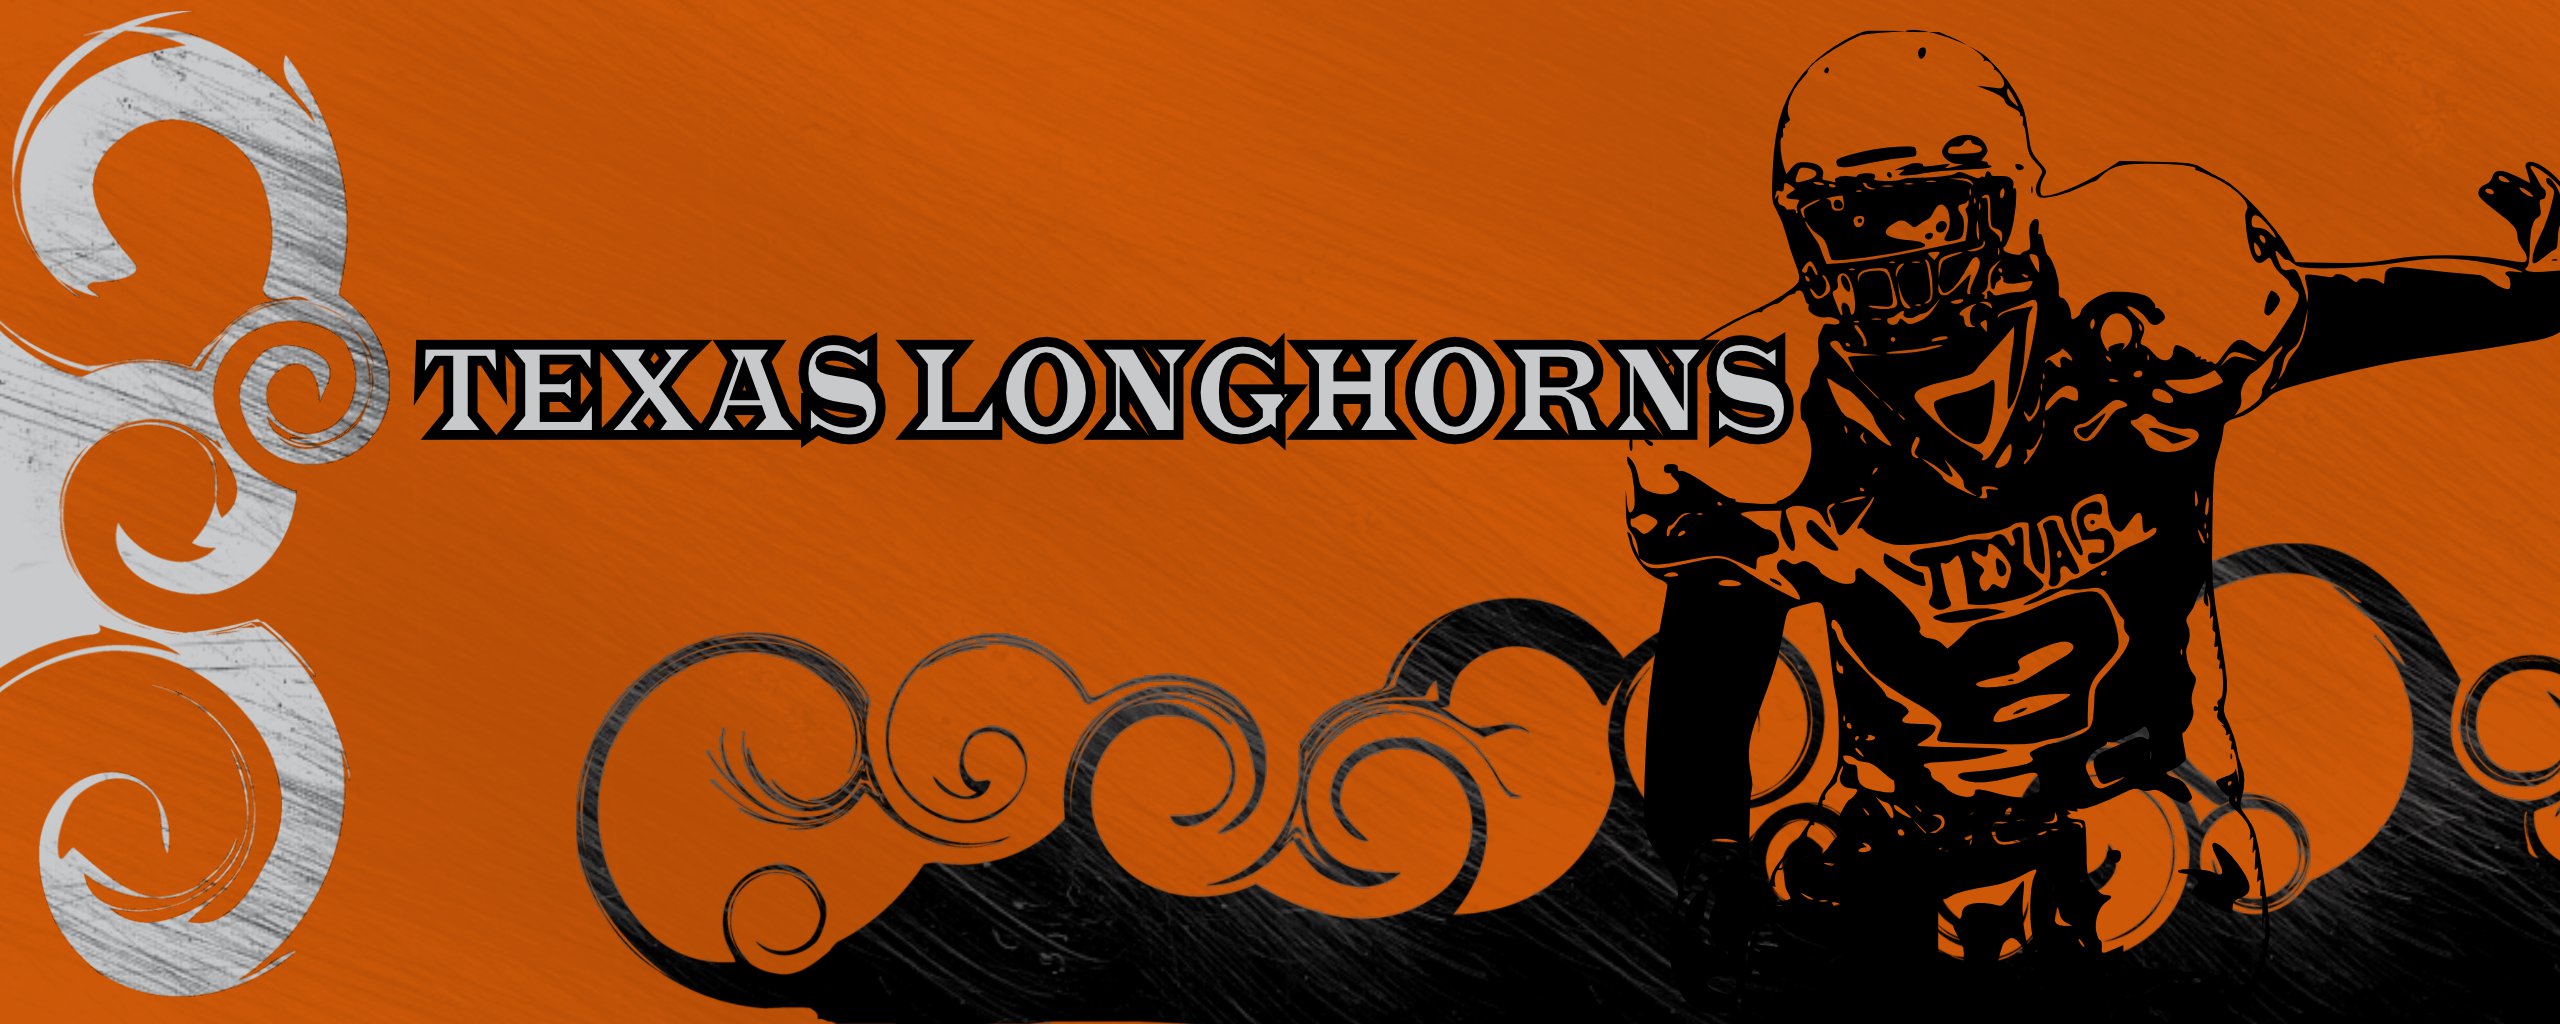 Texas Longhorns Wallpaper By Thunderbird Bln